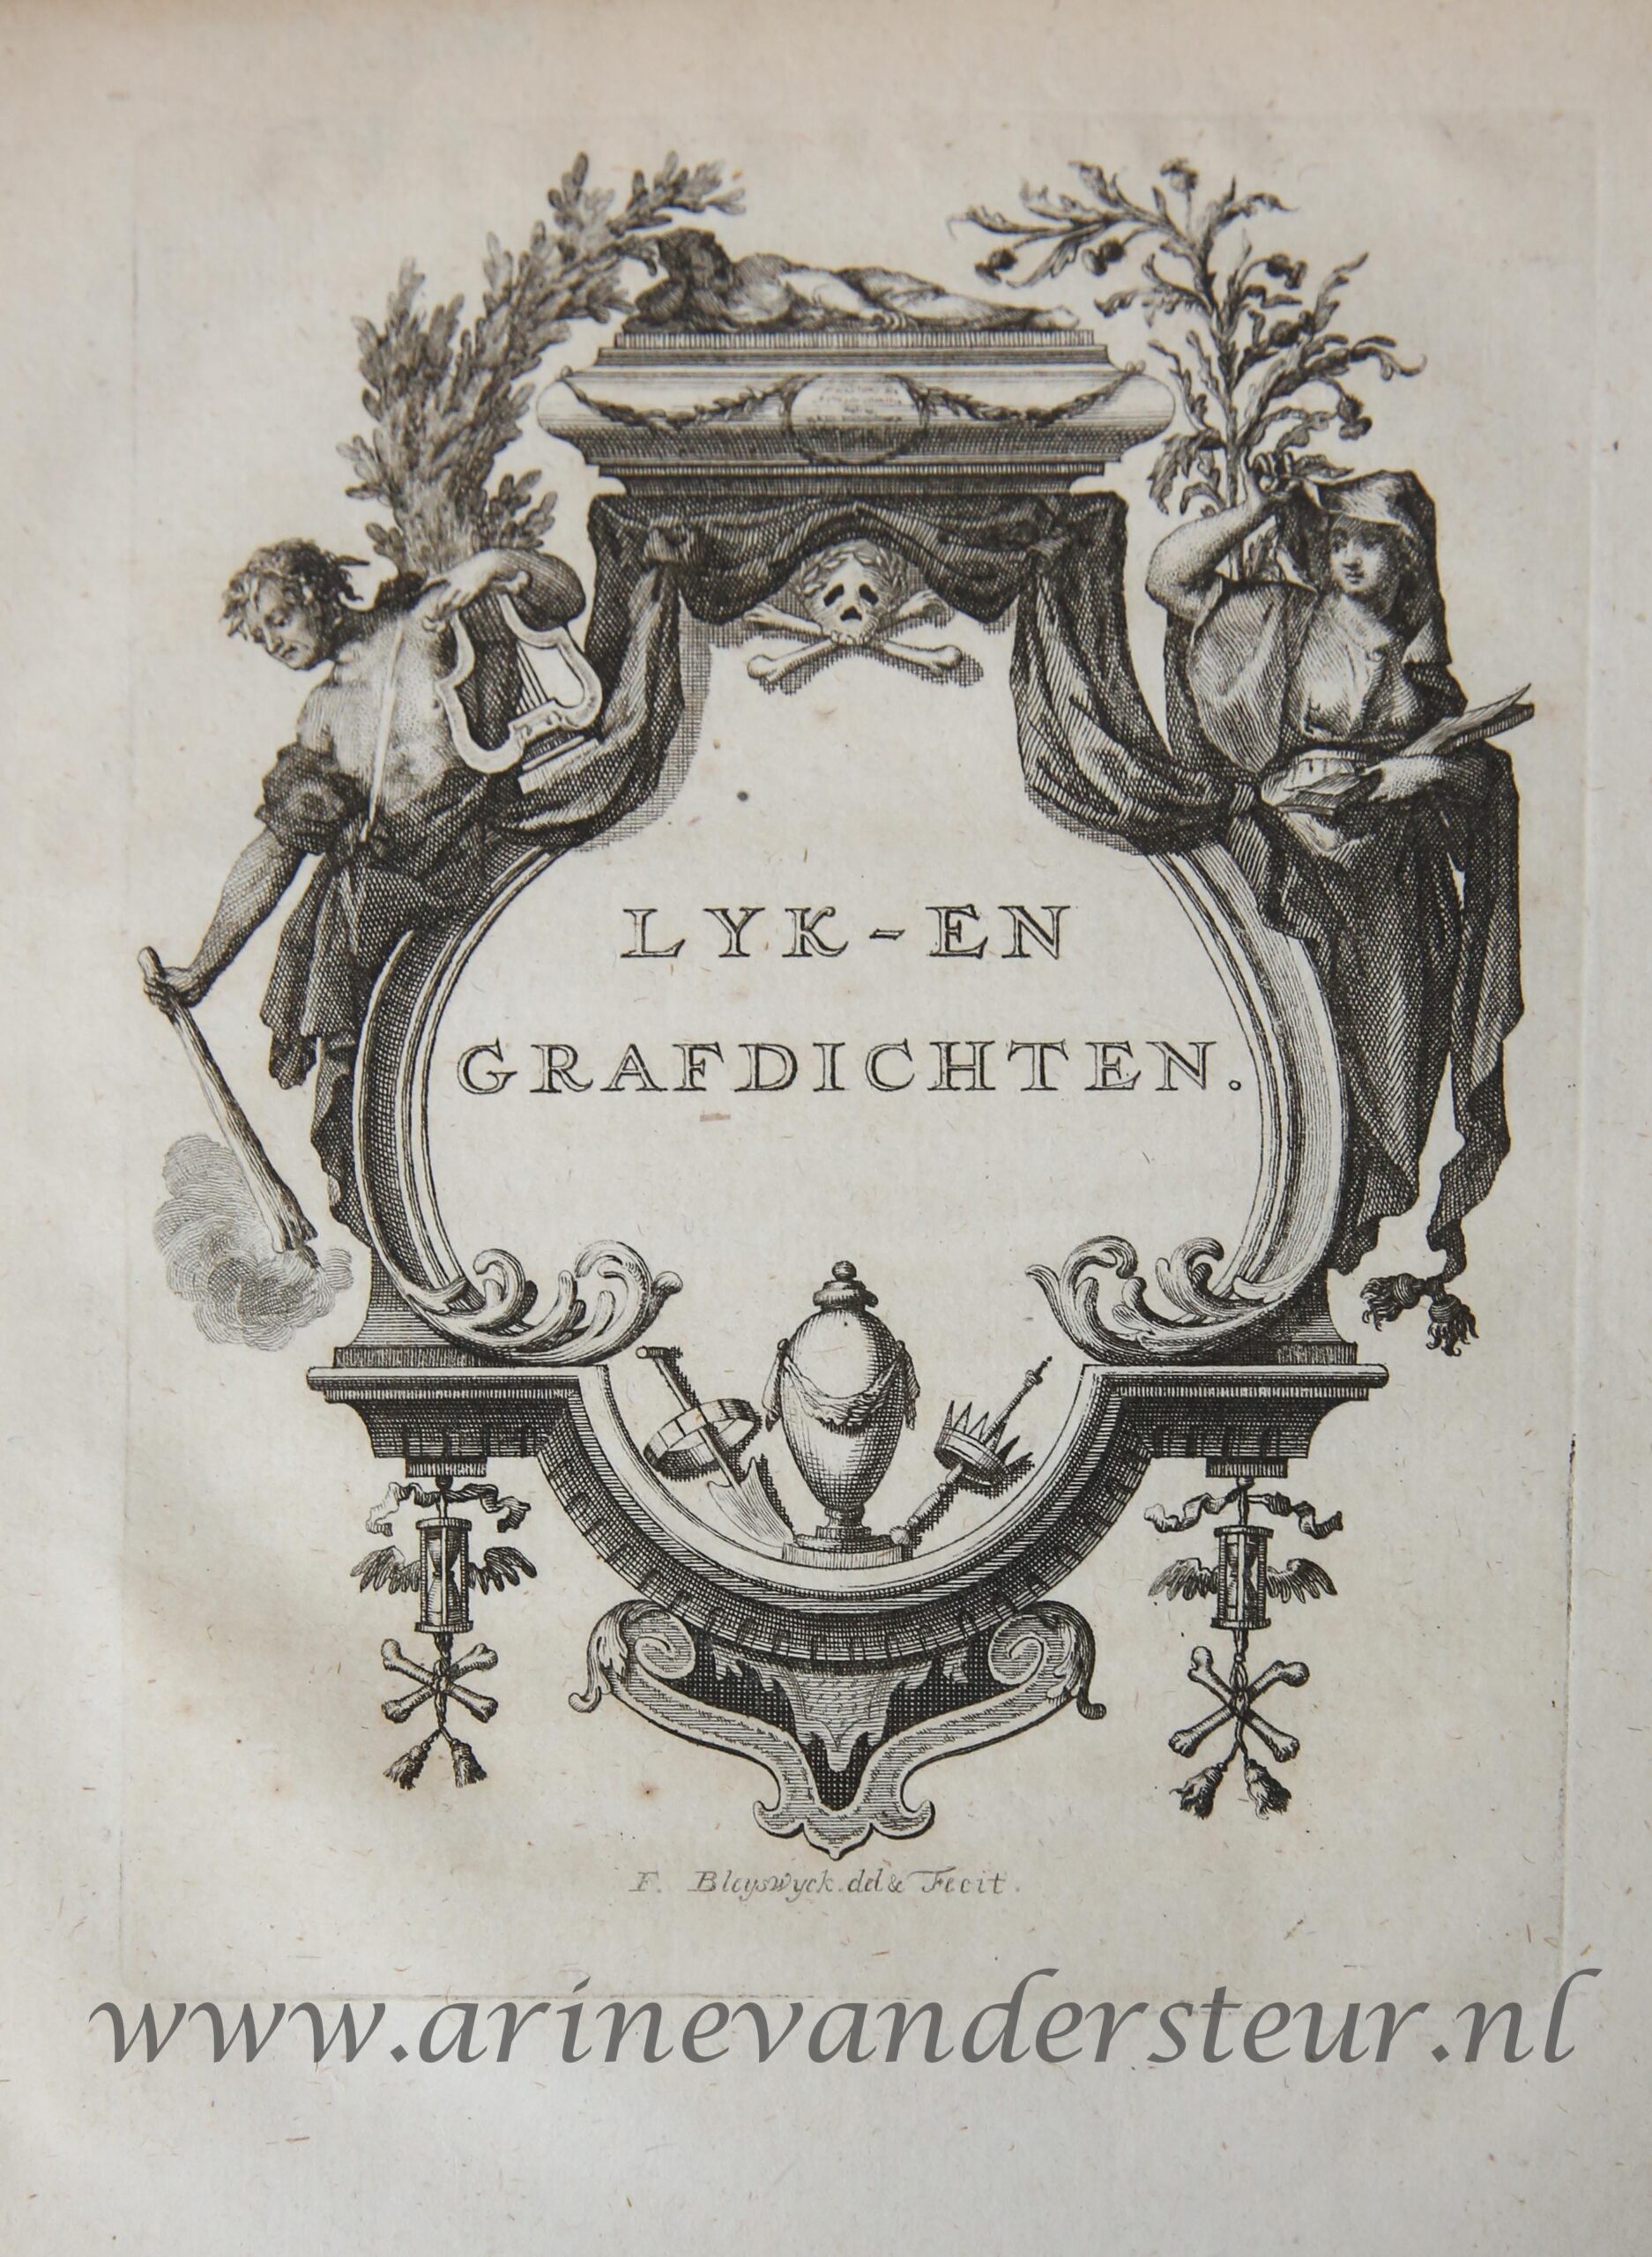 [Antique title page, ca. 1700] LYK- EN GRAFDICHTEN, published ca. 1700, 1 p.